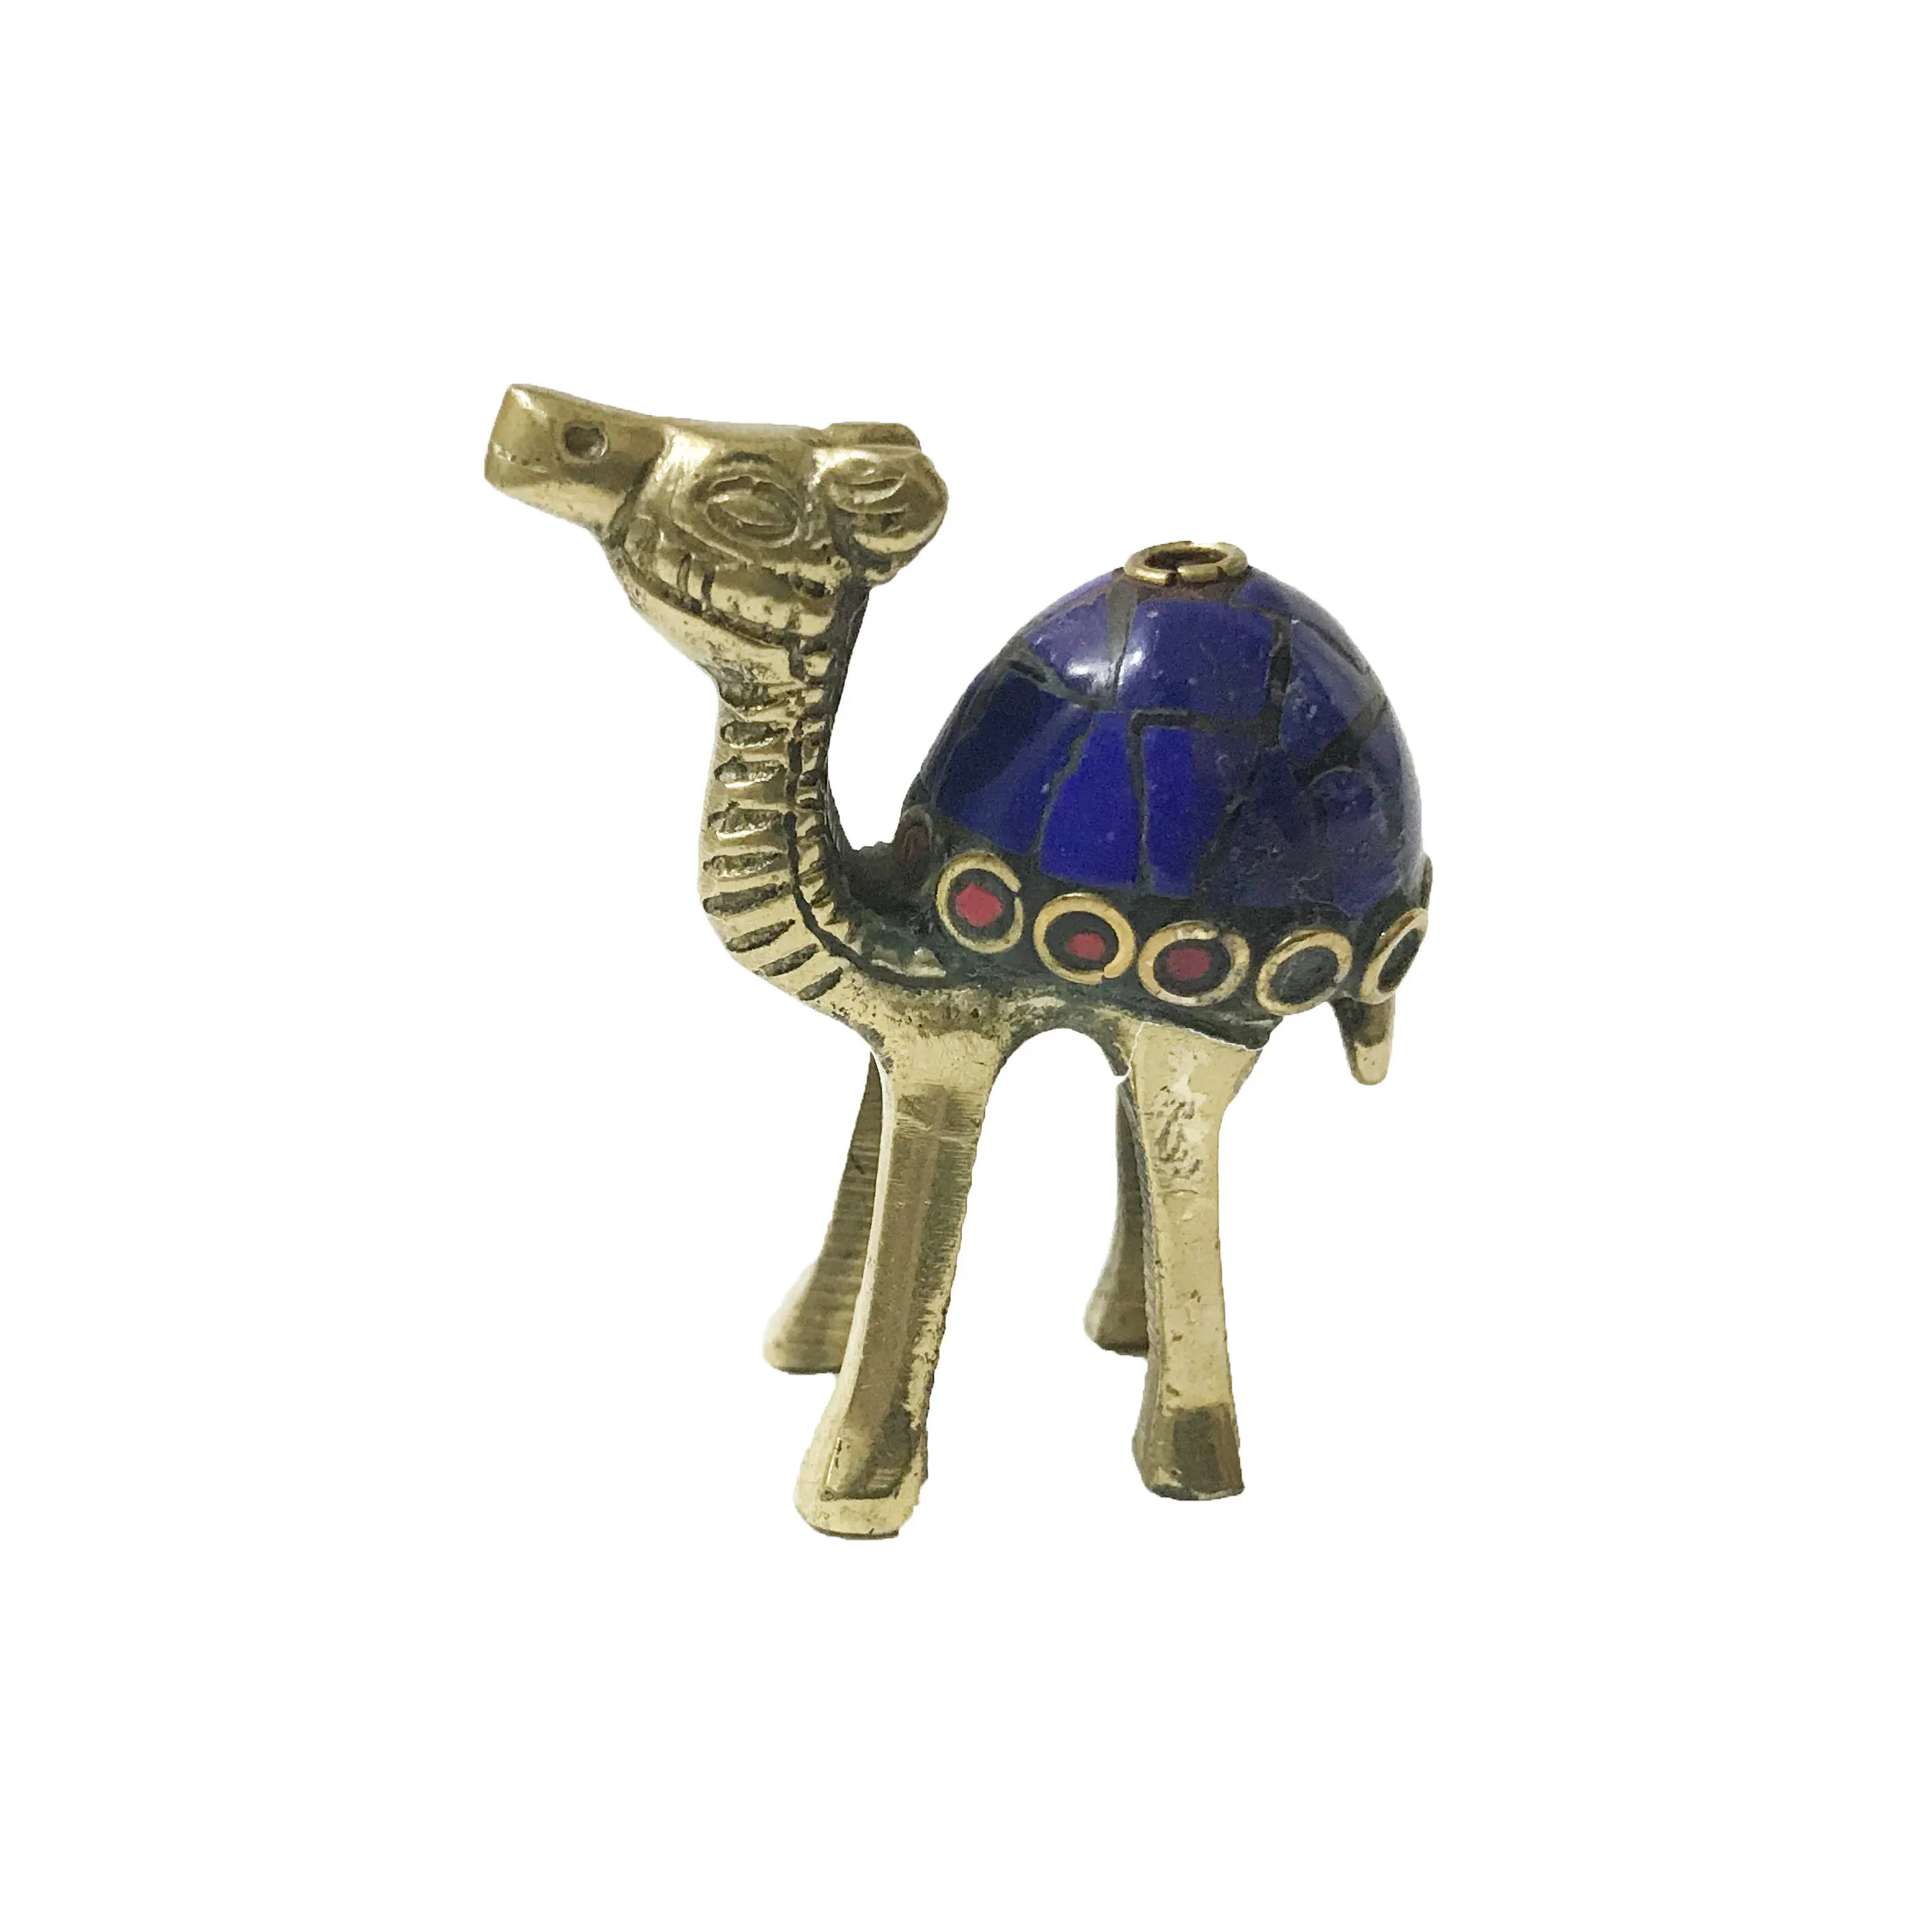 Camel suporte de incenso feito à mão, suporte de incenso em latão com pedra de trabalho para varas de incenso indiana, acabamento artesanal, prata e dourado